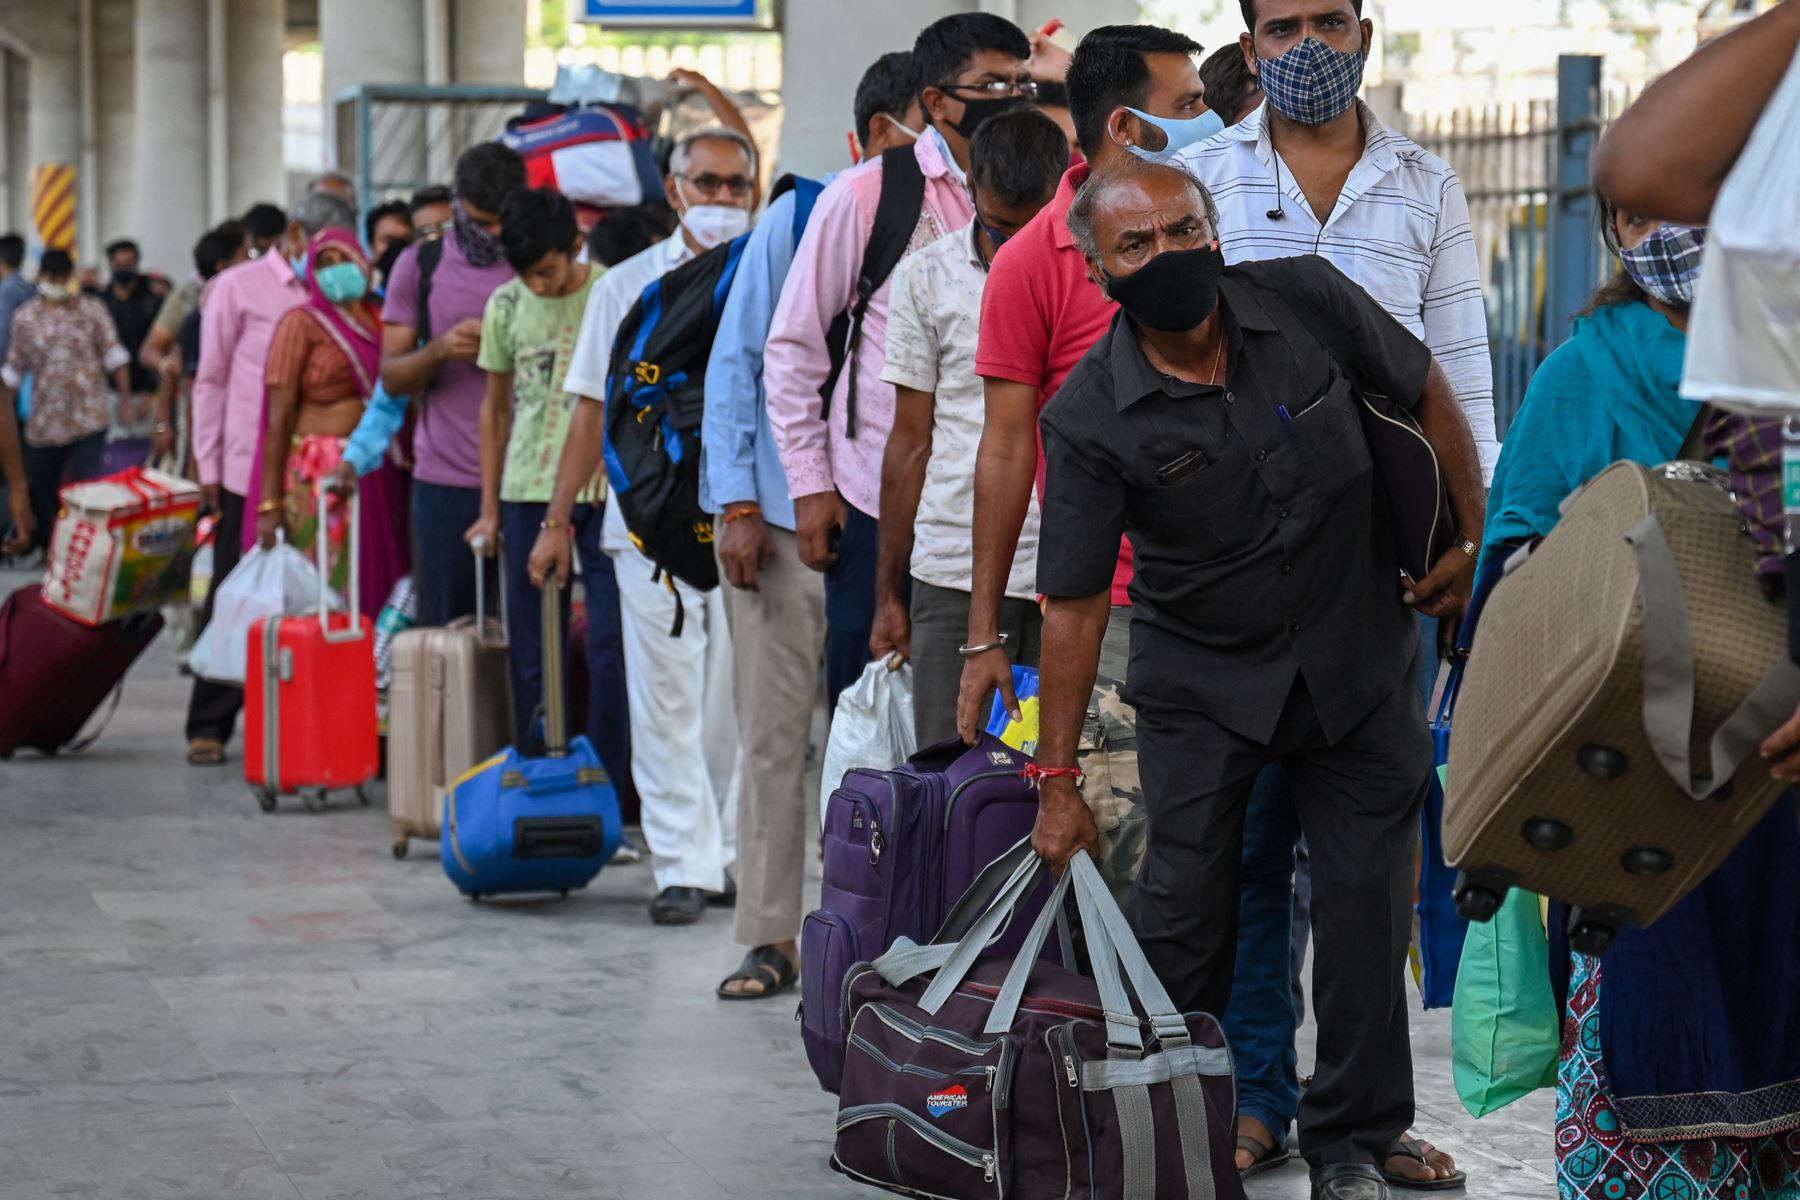 Los pasajeros hacen cola para que les controlen la temperatura durante una prueba de detección del coronavirus Covid-19 después de llegar a una plataforma ferroviaria en un tren de larga distancia, en Mumbai.
Foto: AFP